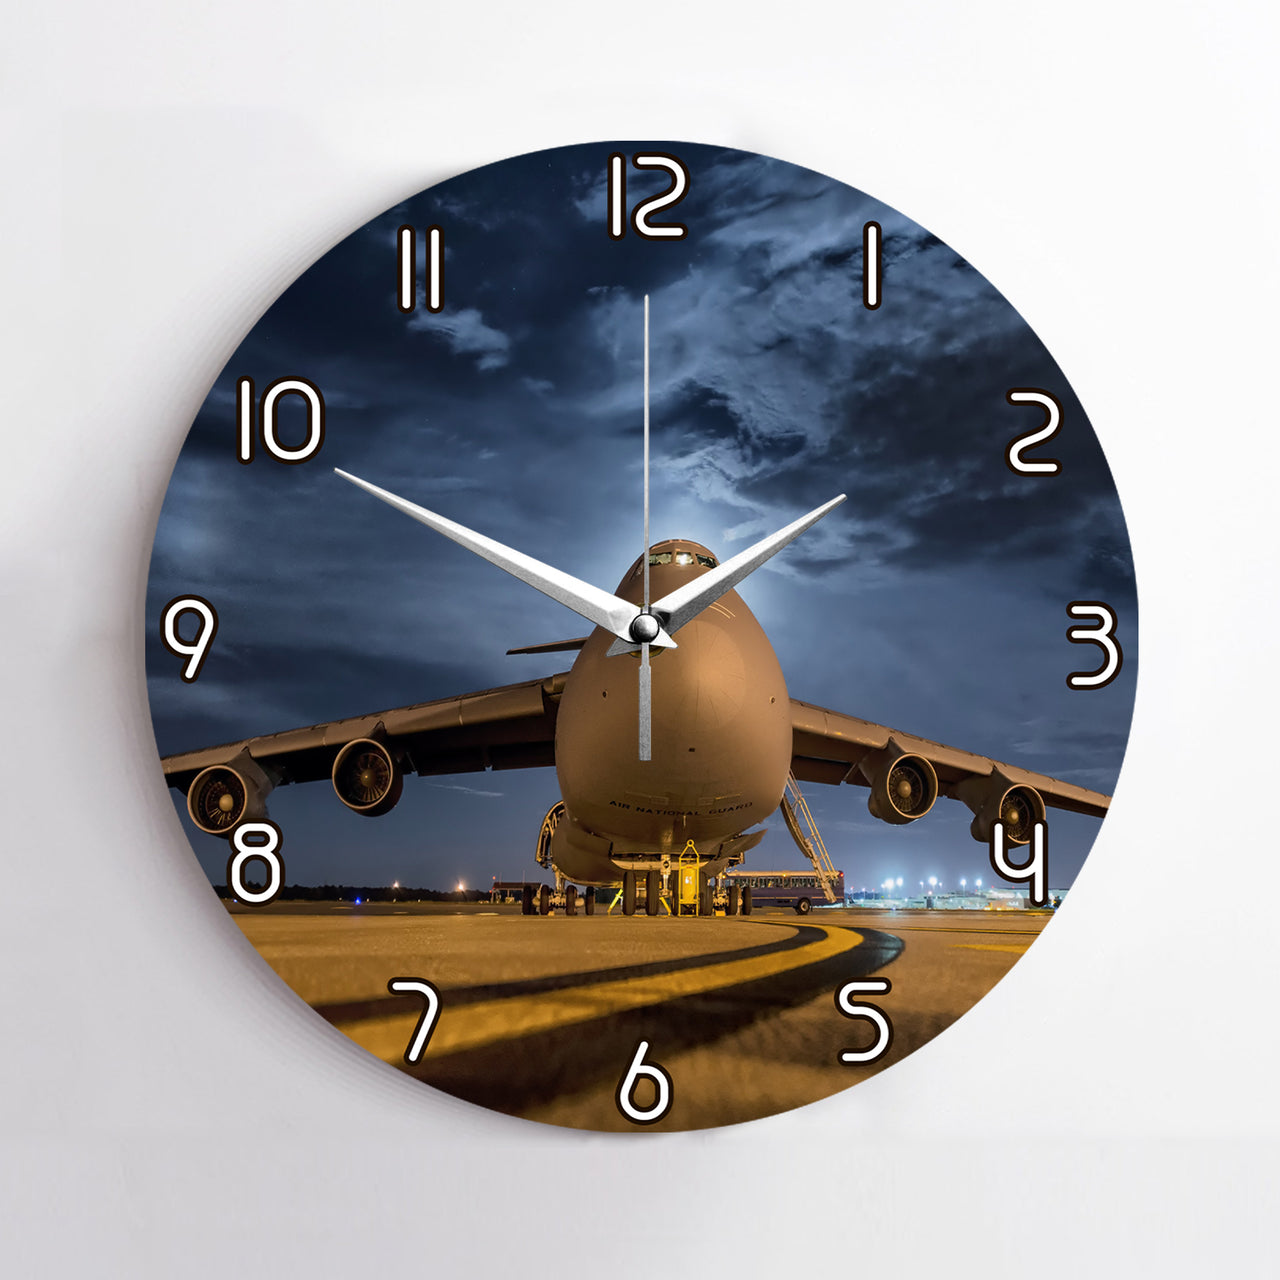 Amazing Military Aircraft at Night Printed Wall Clocks